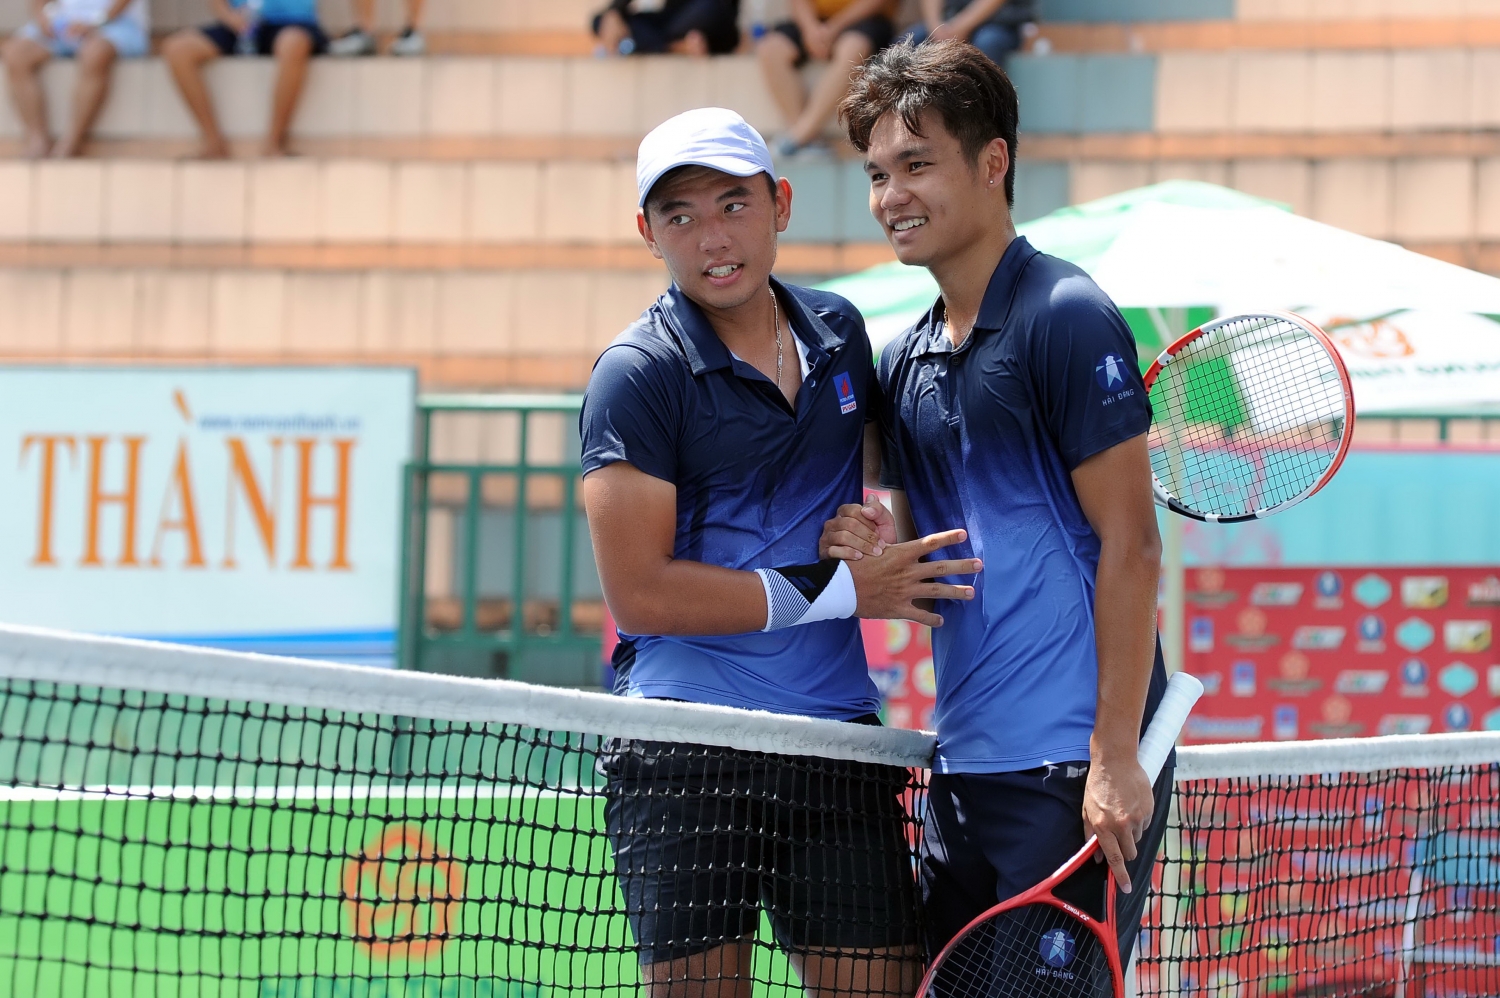 Hoàng Nam và Linh Giang - 2 gương mặt nổi bật trong đội hình của Việt Nam tại Davis Cup 2021